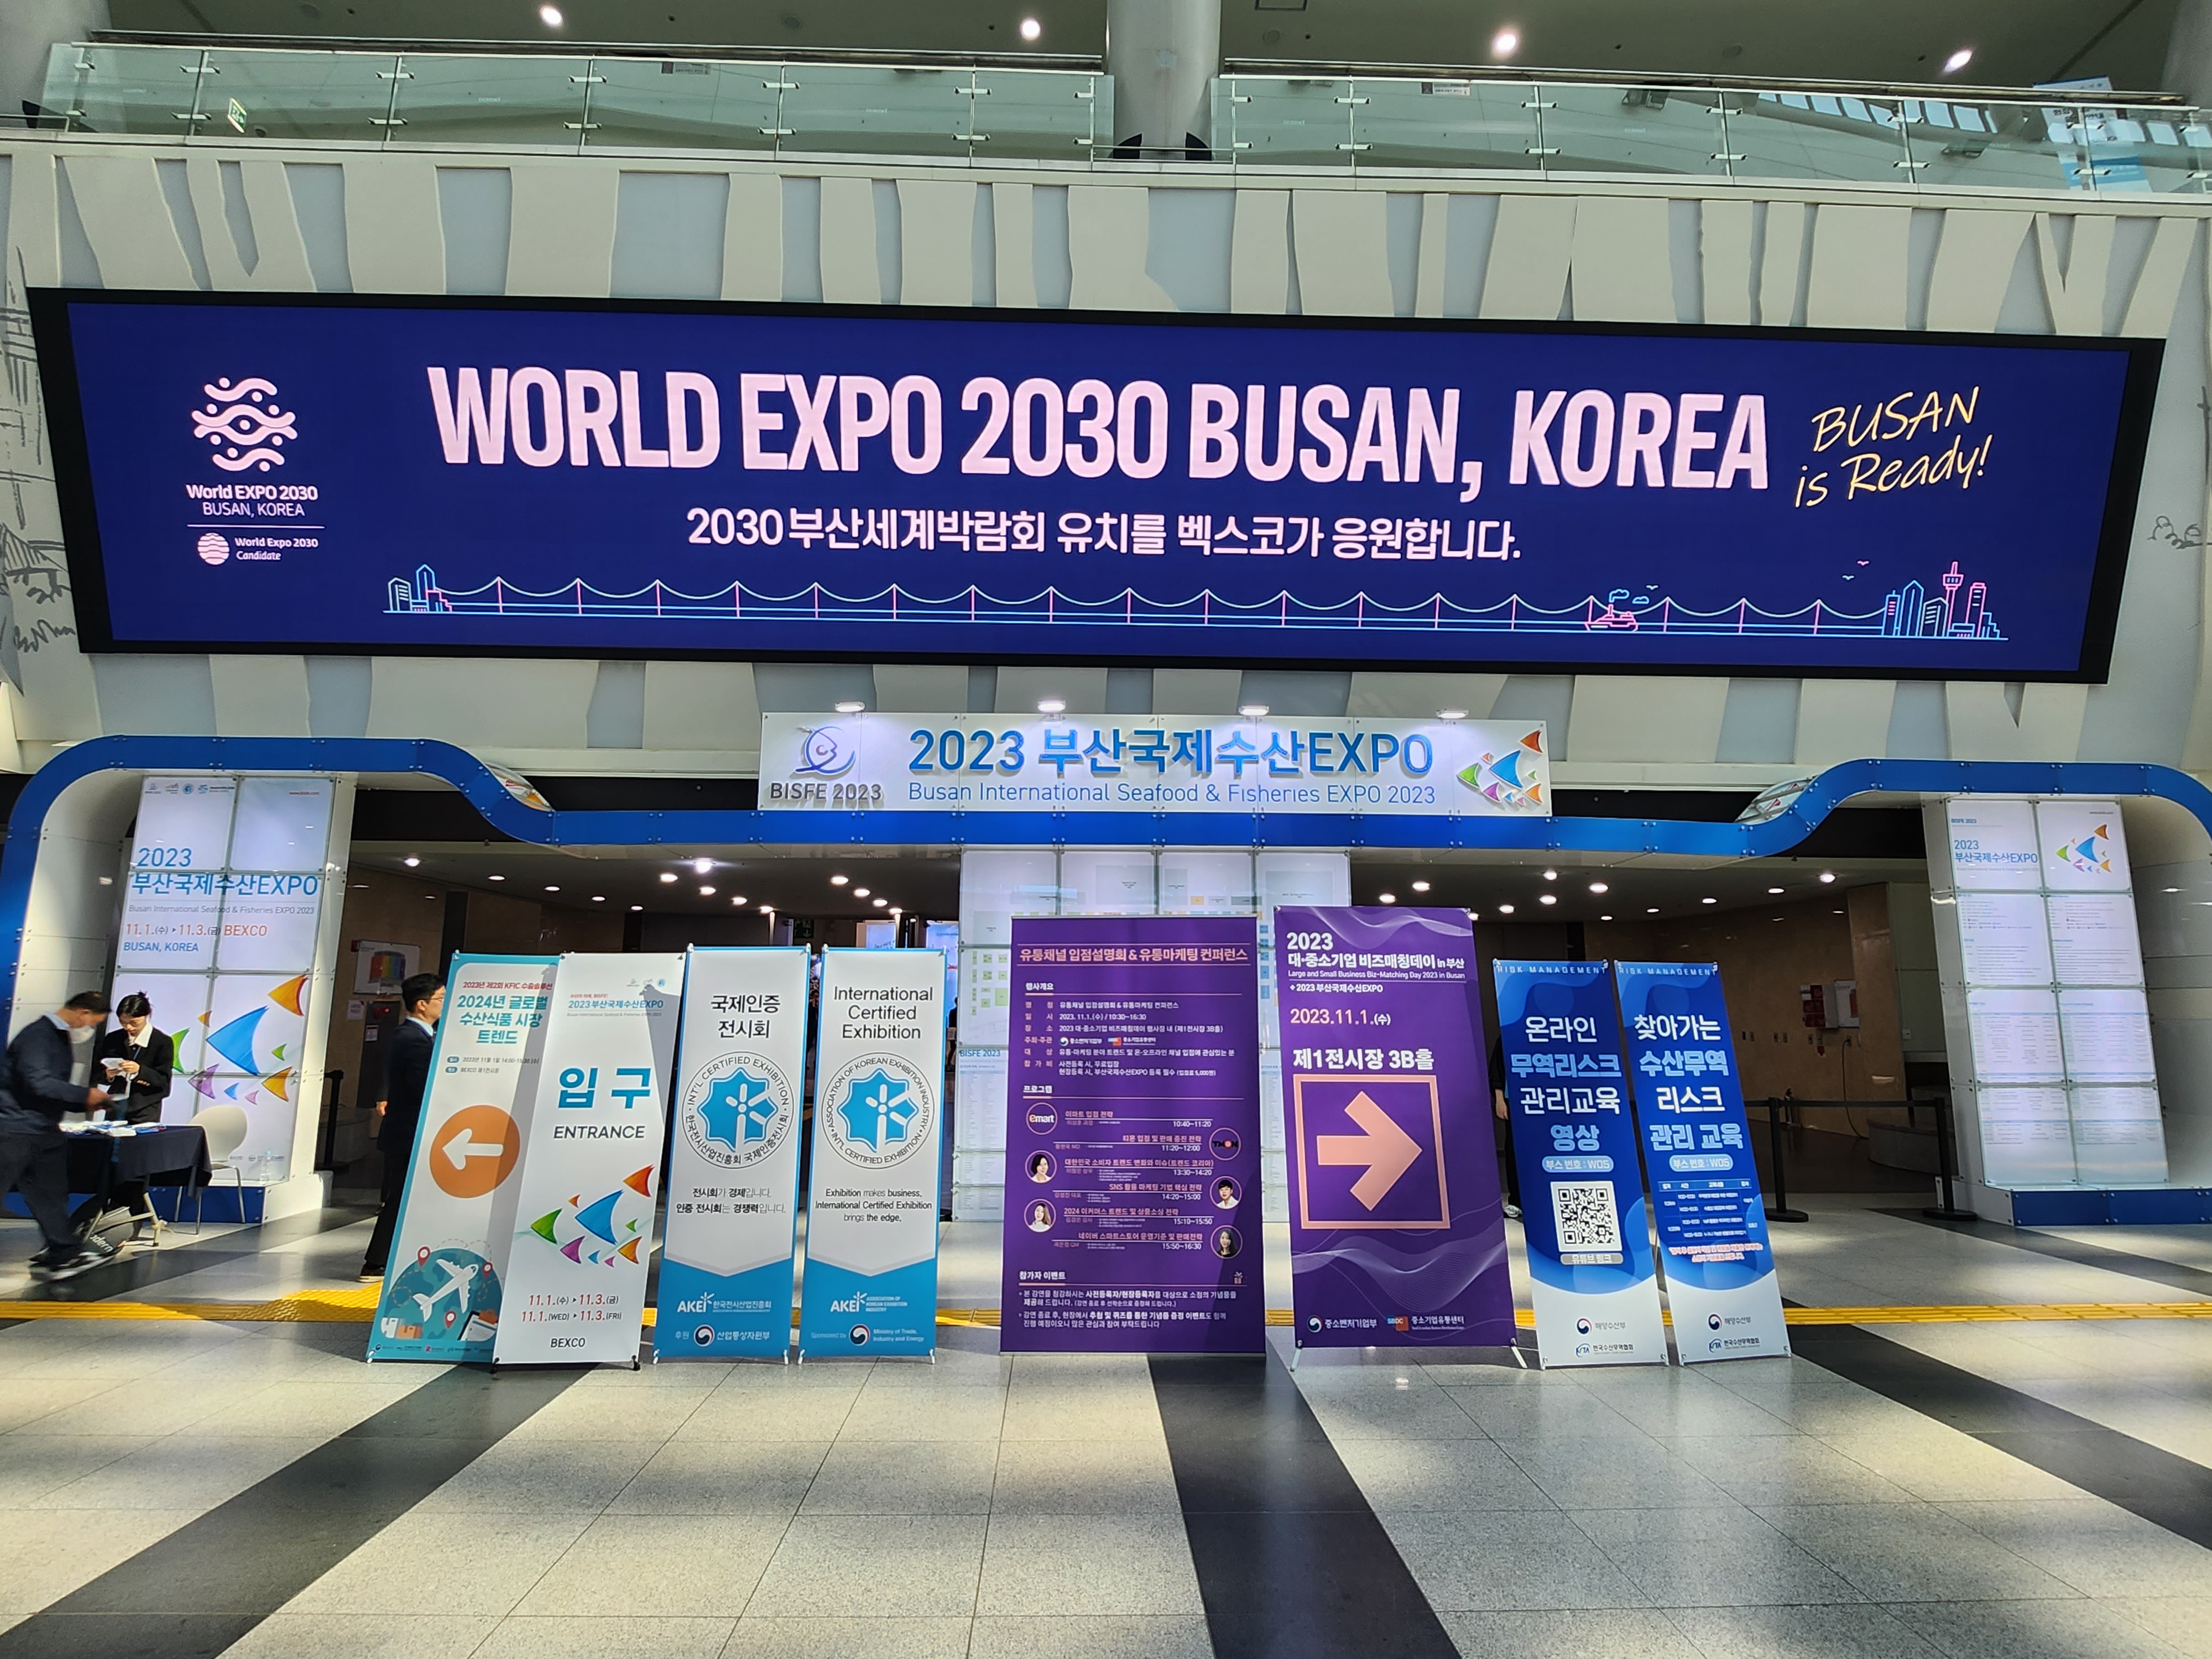 2023 부산국제수산 EXPO 전경 (WORLD EXPO 2030 BUSAN, KOREA(BUSAN is Ready!) 2030부산세계박람회 유치를 벡스코가 응원합니다.) BISFF 2023, 2023 부산국제수산 EXPO, Busan International Seafood & Fisheres EXPO 2023